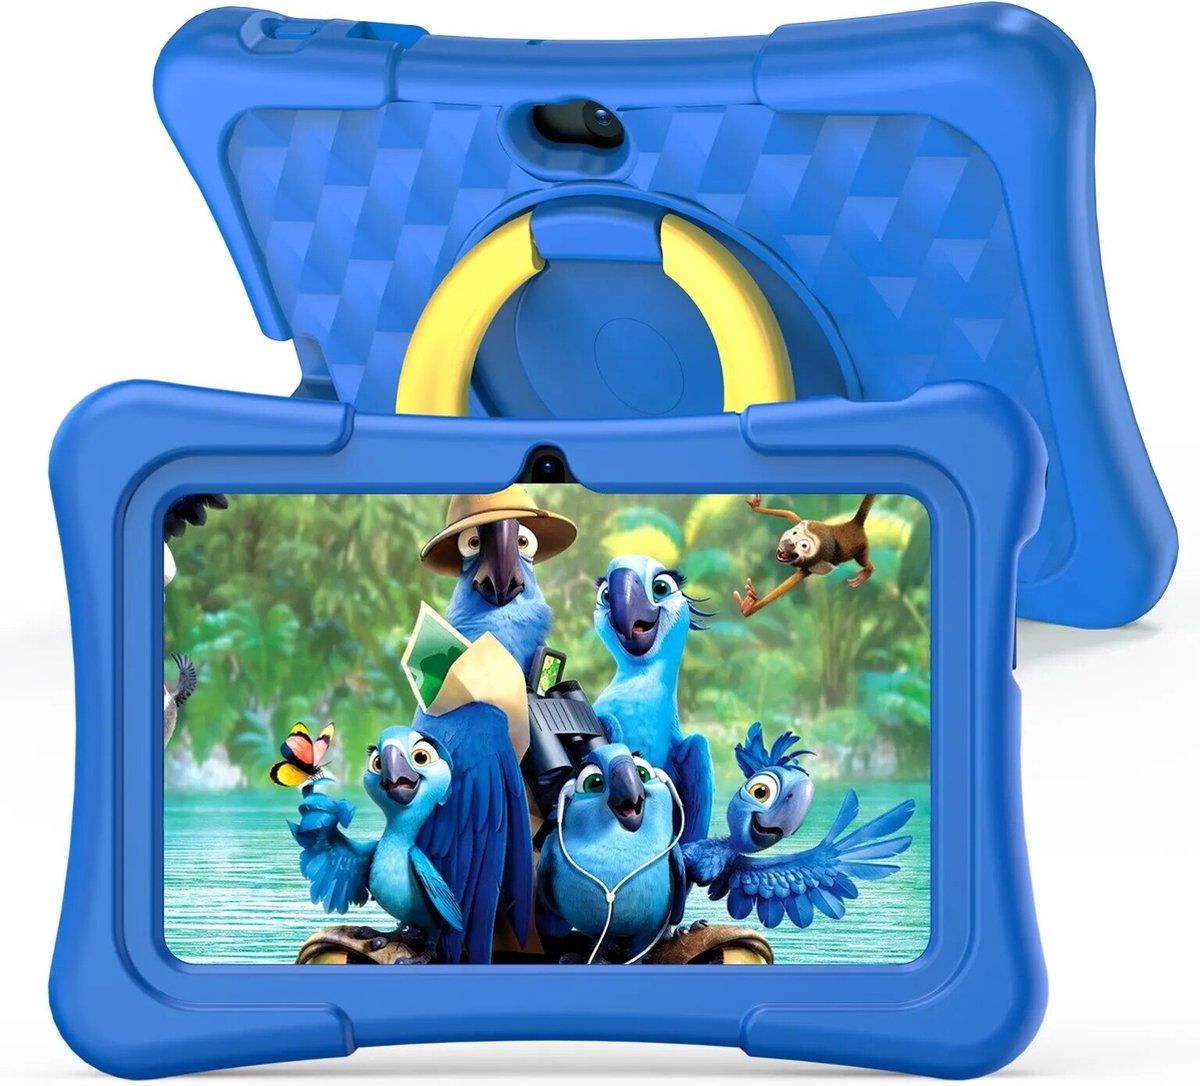 K7 PRO - Kinder Tablet vanaf 3 jaar - 17,8 cm - Android - Blauw - 1024x600 Ultra HD - 2500 MAH - WIFI - Voorgeïnstalleerd - 32 GB - Zacht Silicone Case